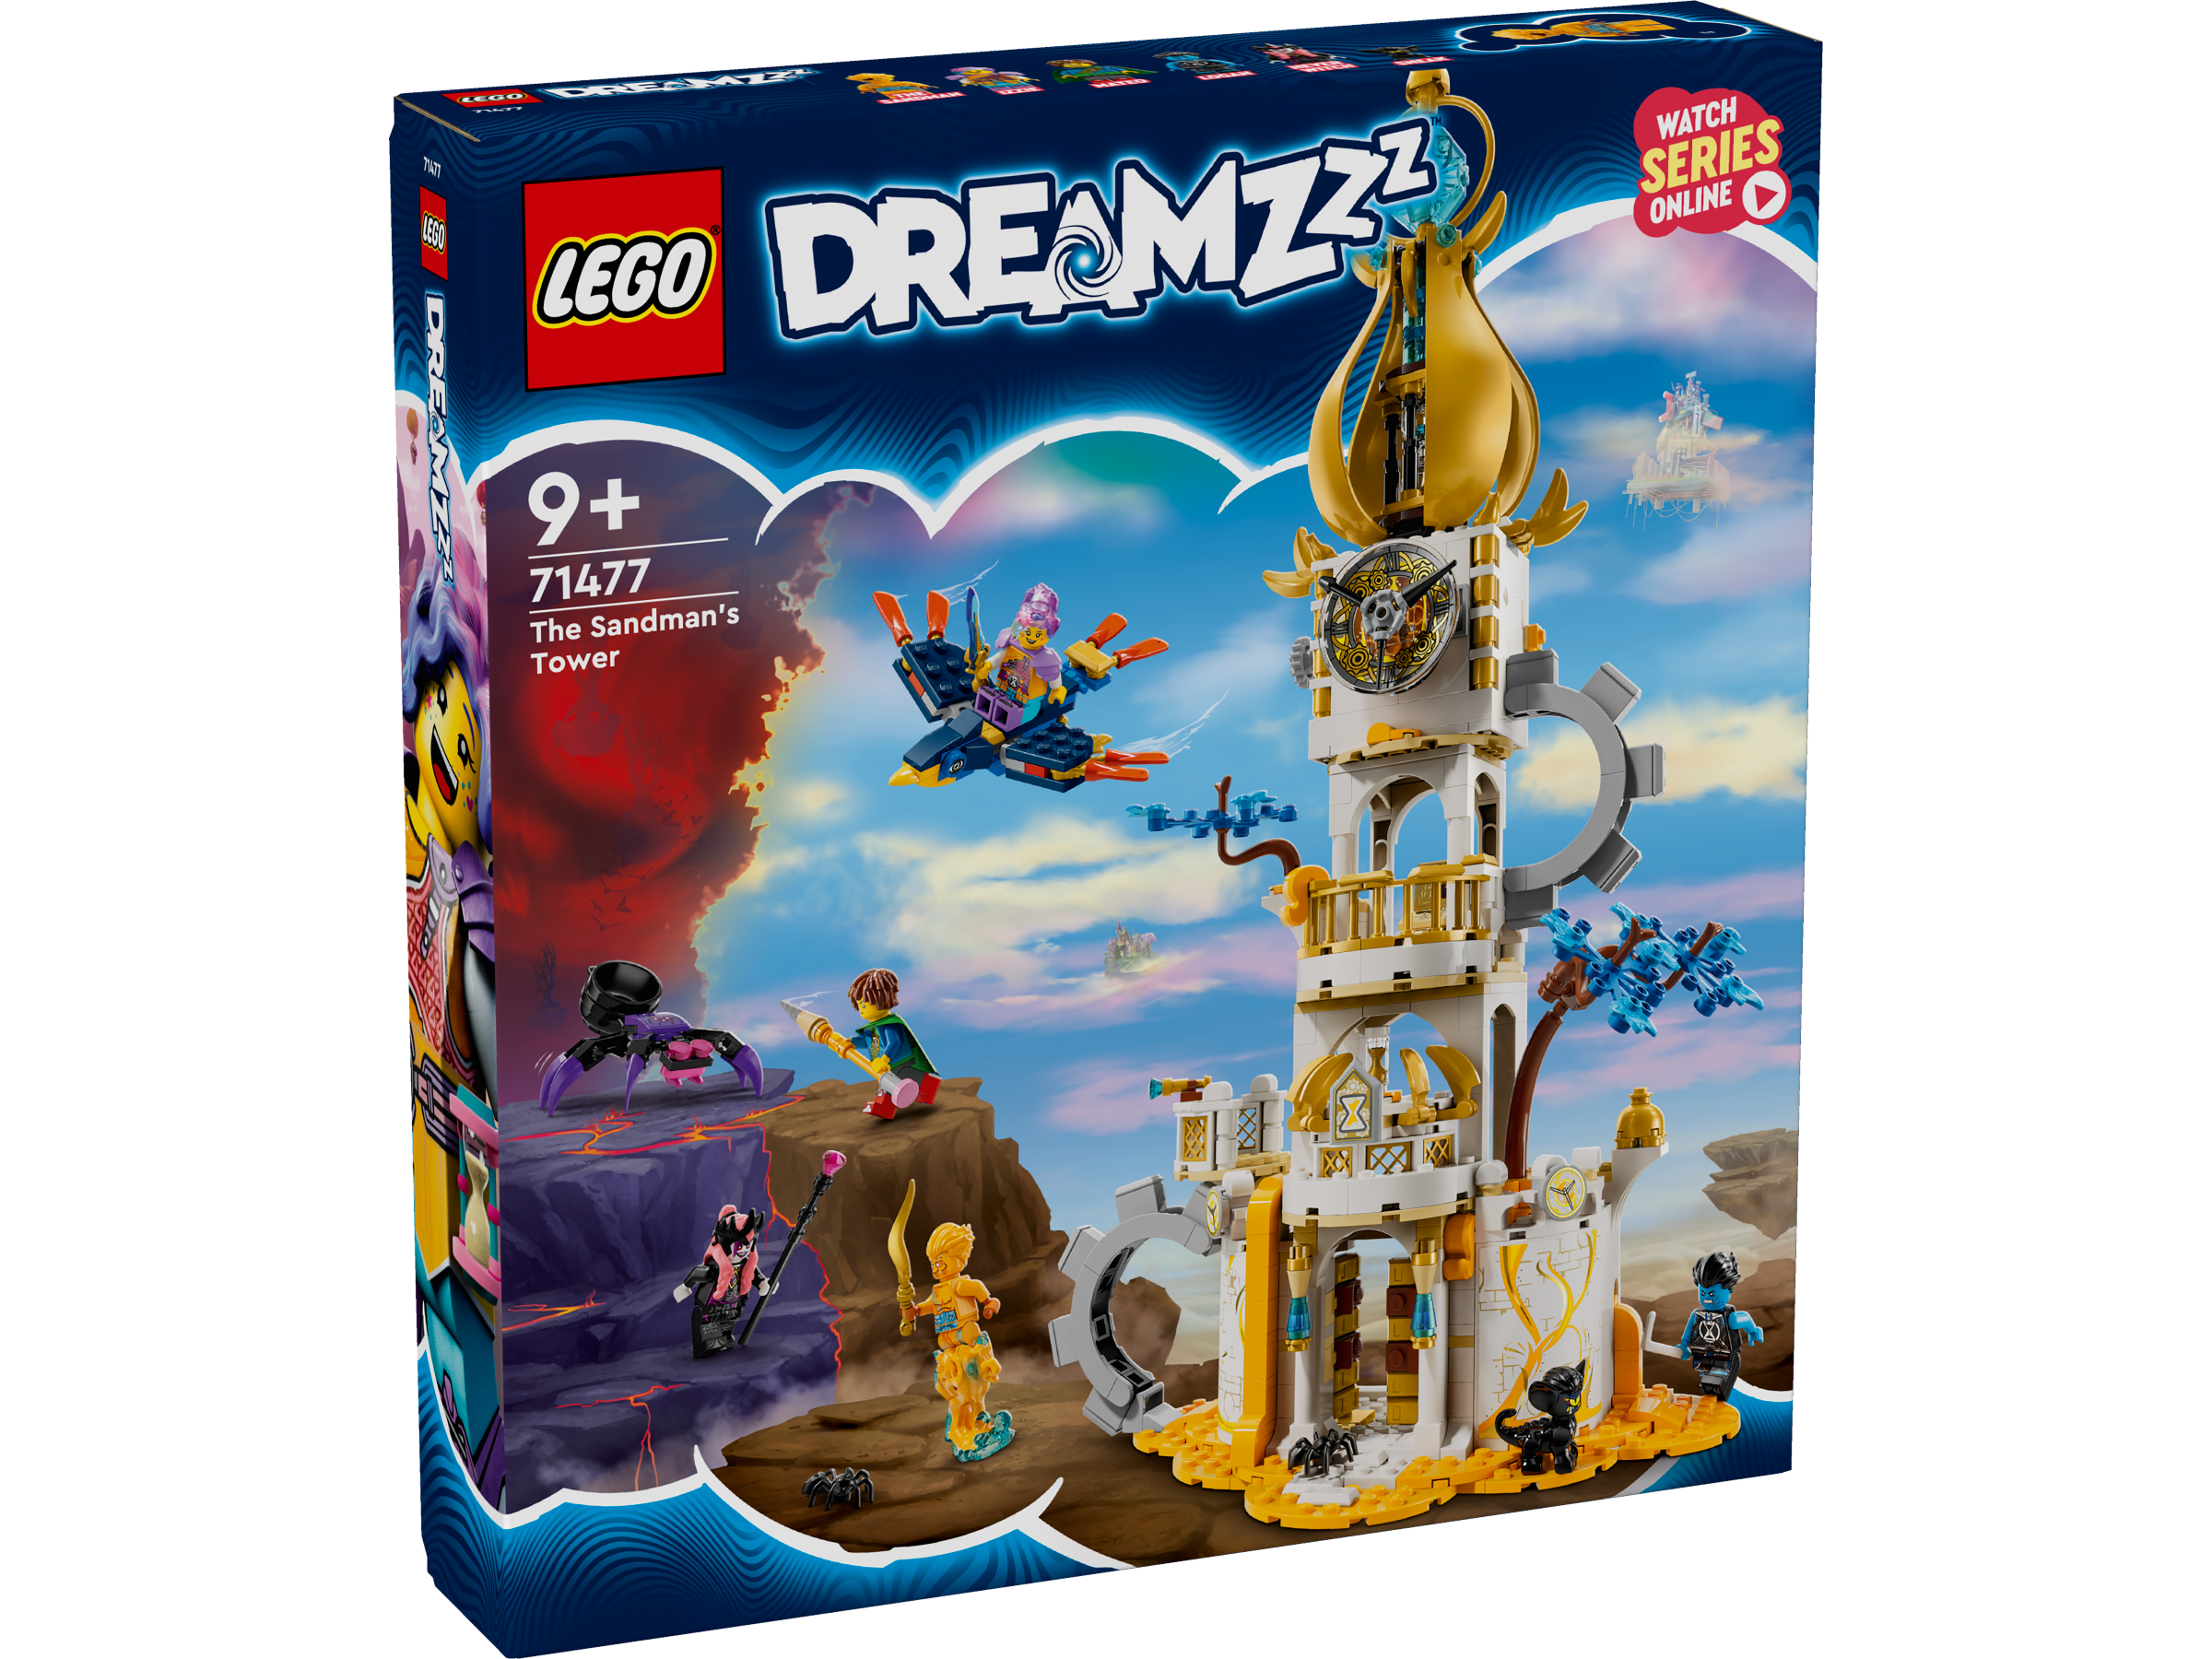 71477 The Sandman's Tower, Lego dreamzzz Wiki